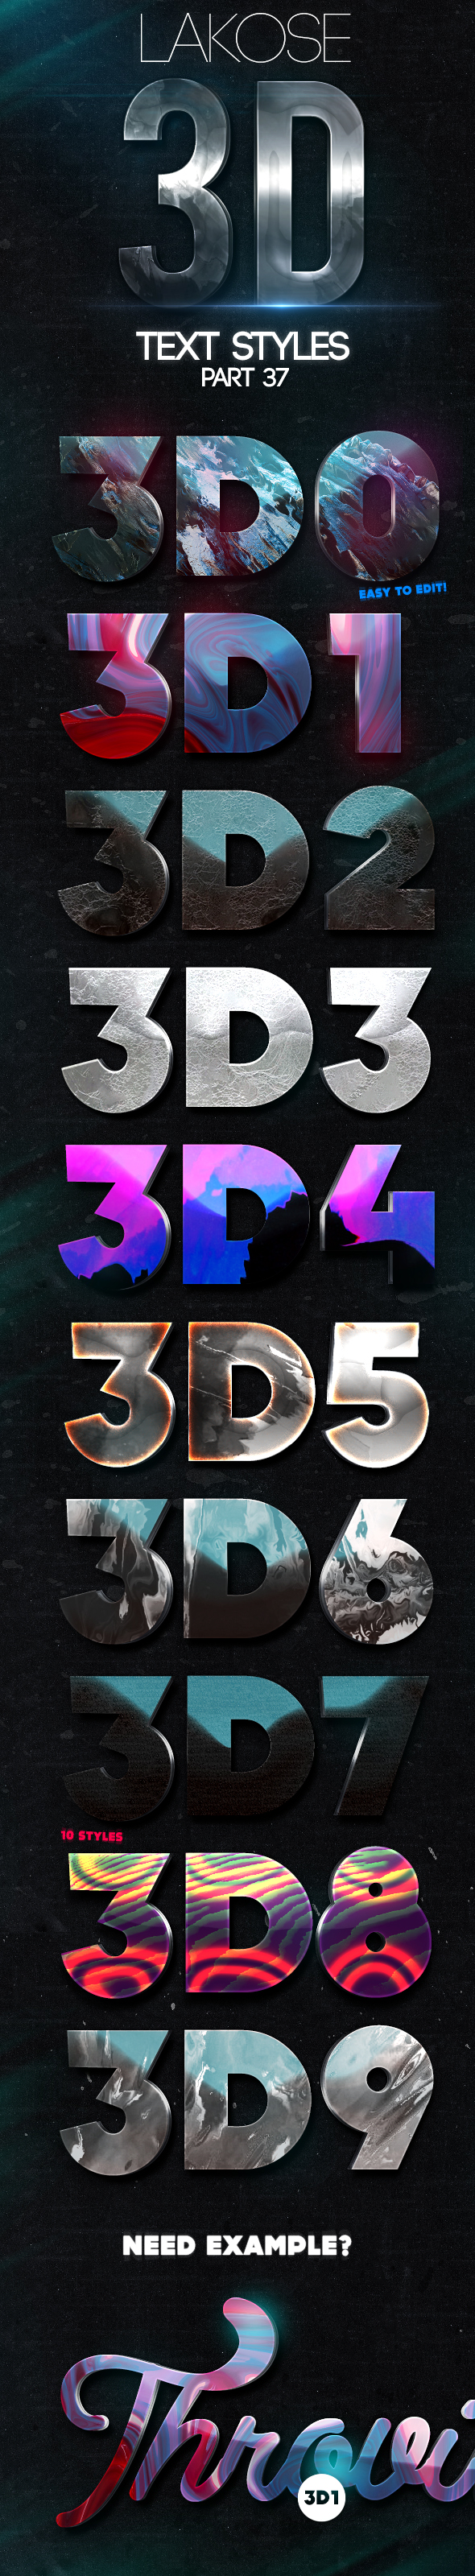 Lakose 3D Text Styles Part 37